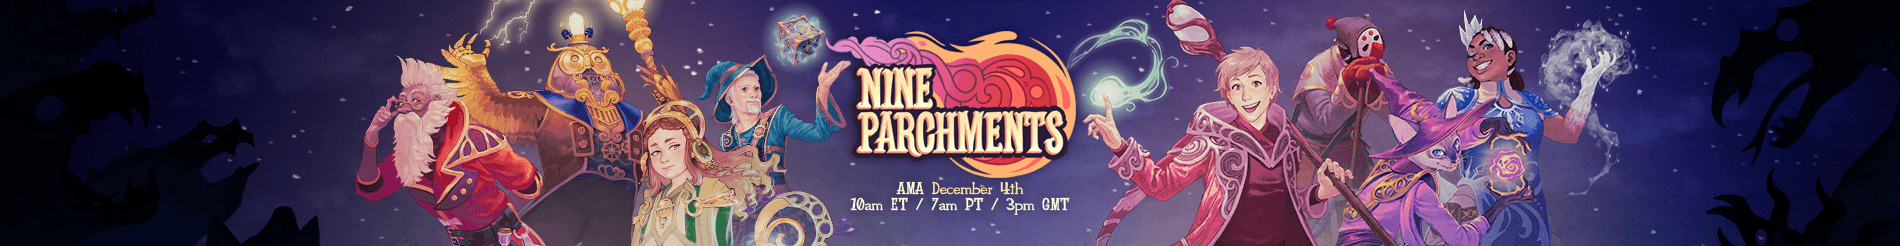 Nine Parchments AMA Banner